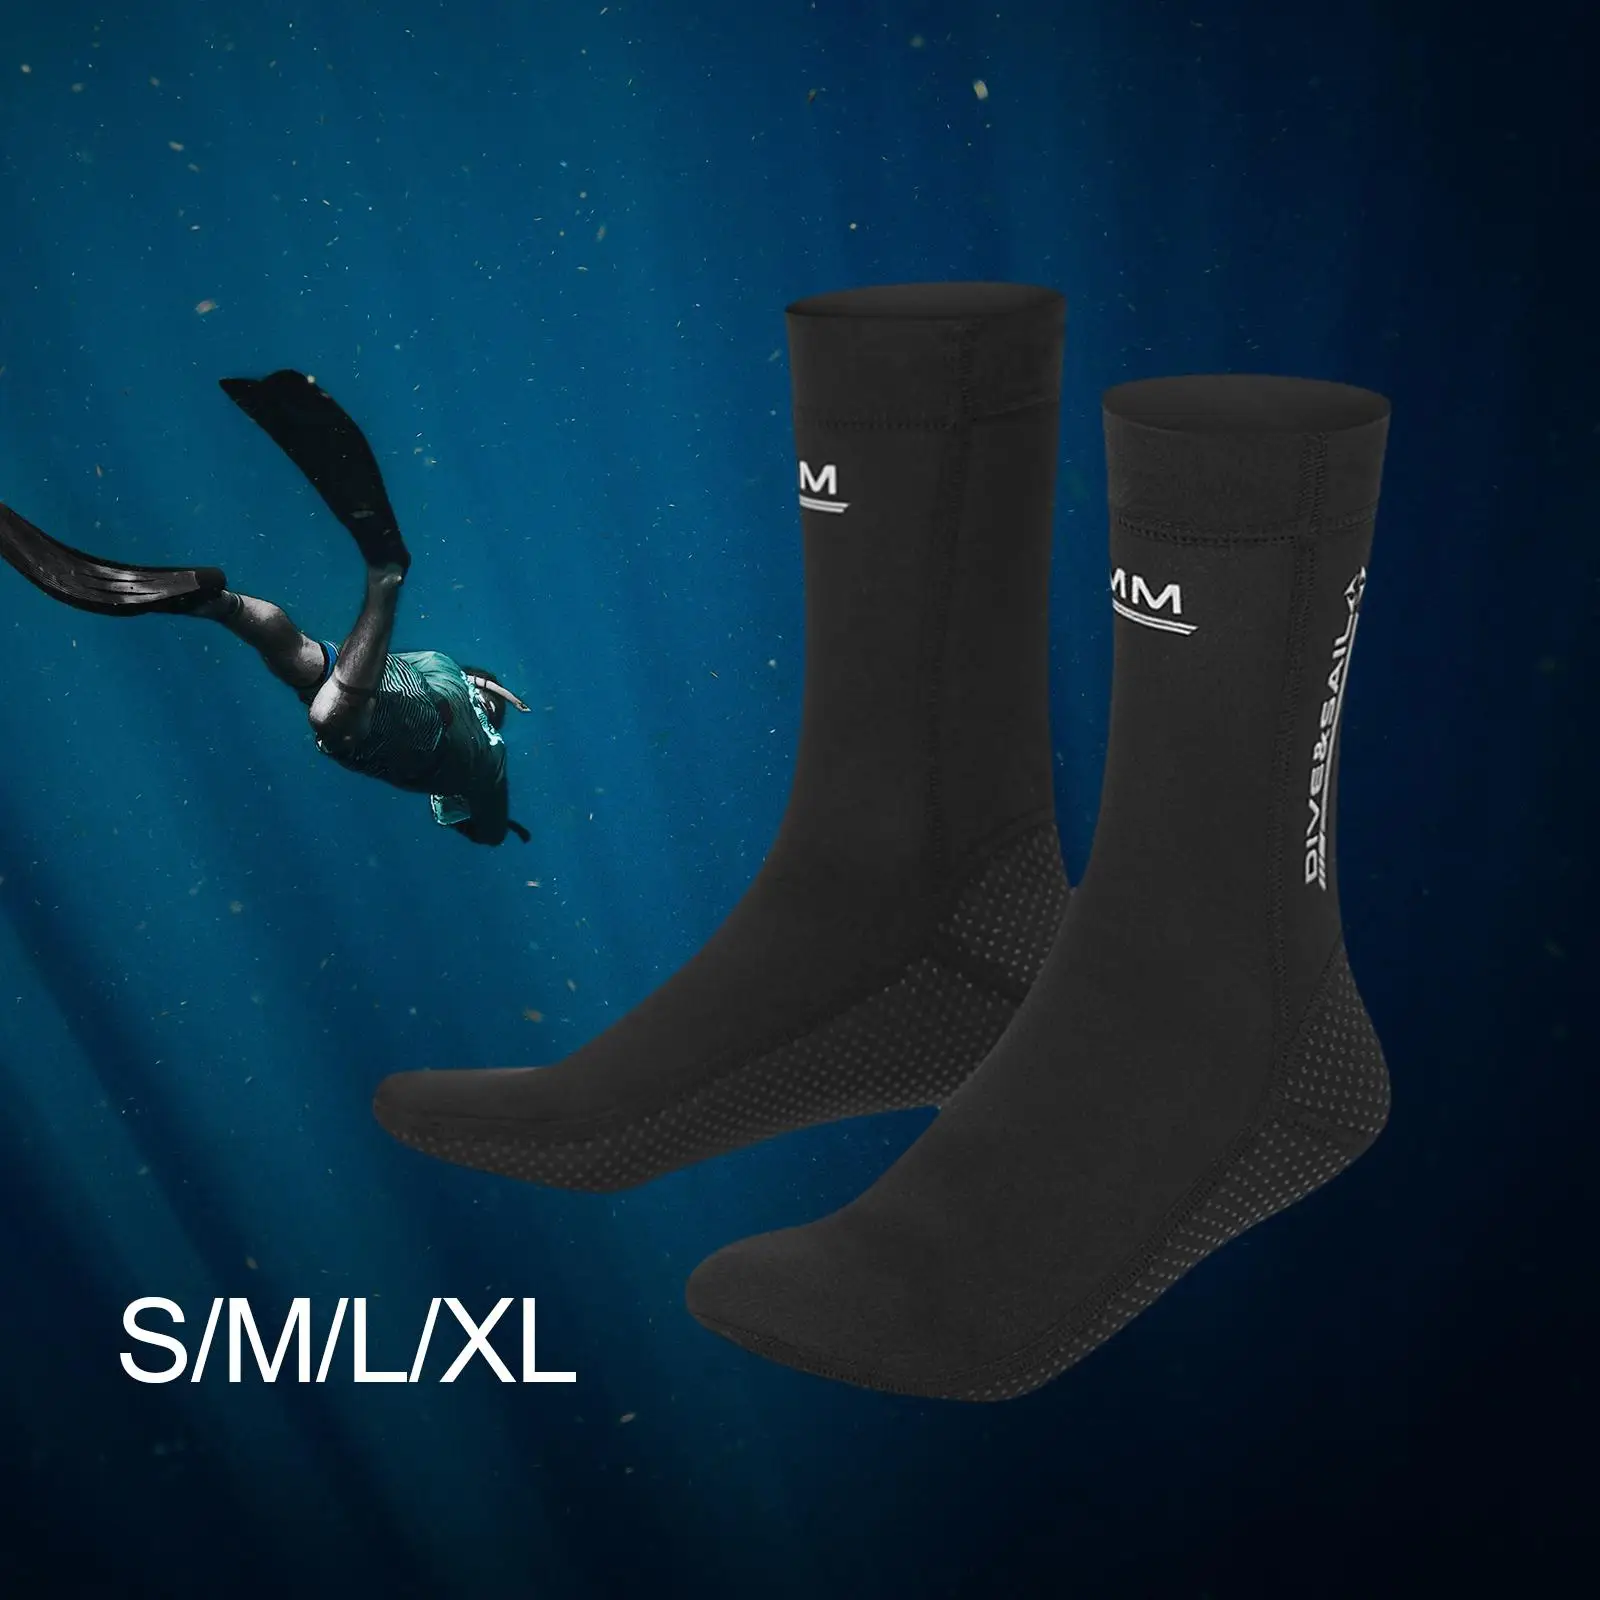 3mm Neoprene Scuba Diving Socks Warm Water Socks Non Slip Beach Wetsuit for Swimming Snorkeling